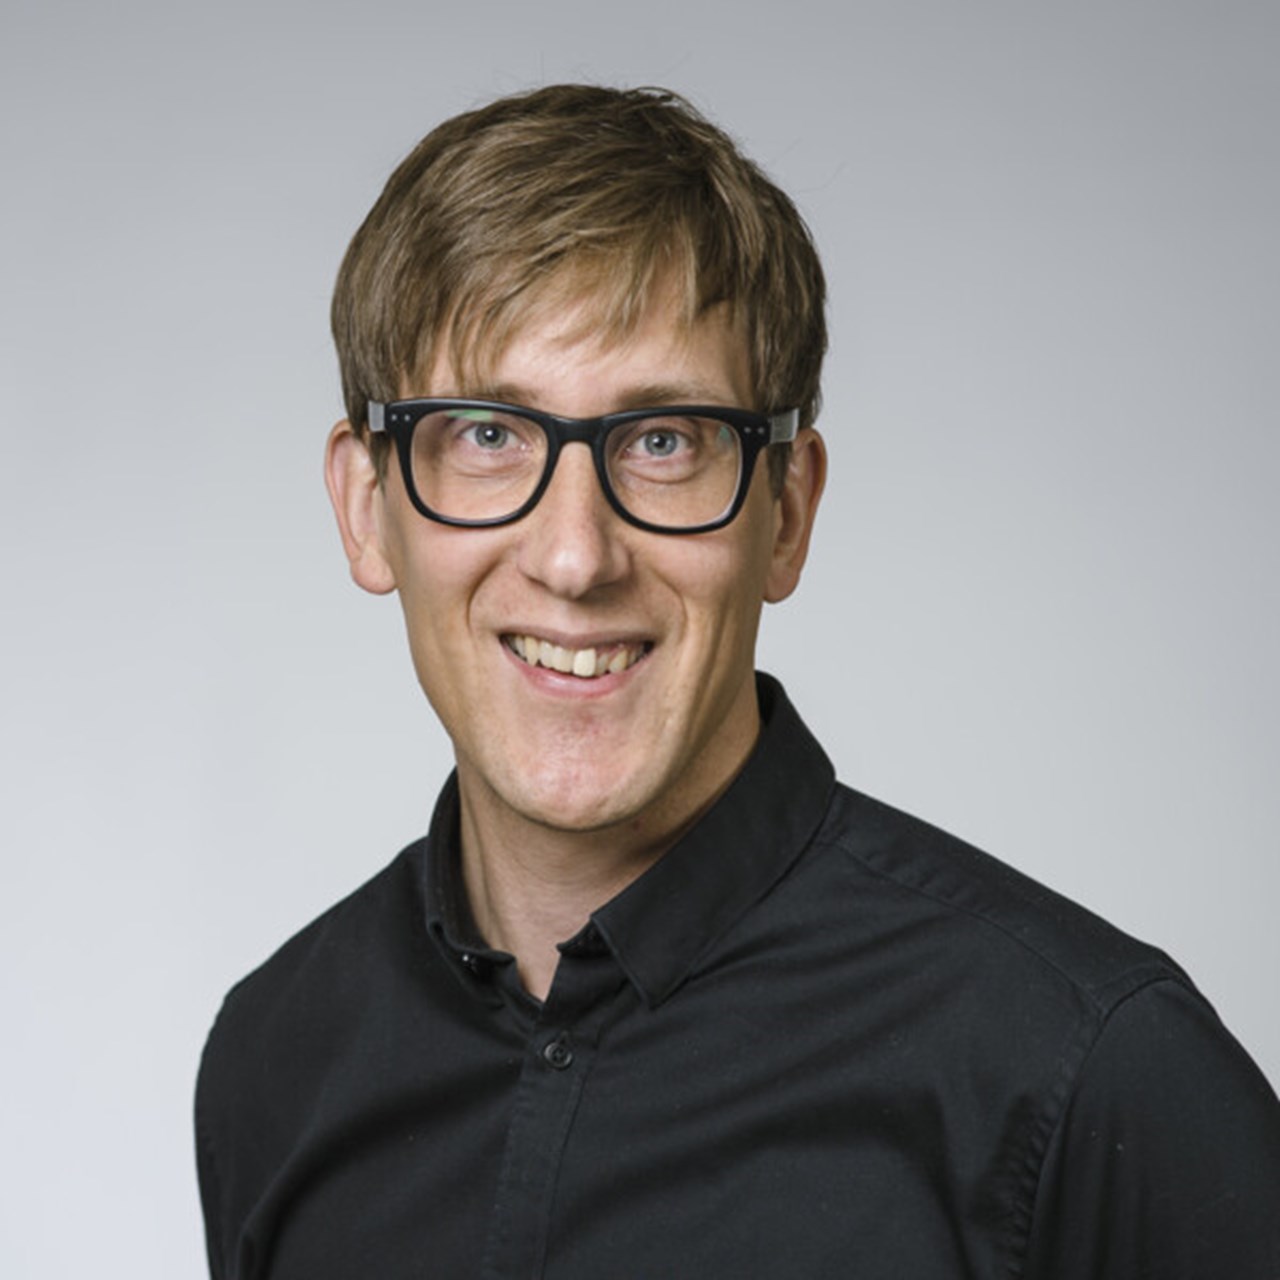 Porträtt av Rikard Eriksson, professor i kulturgeografi med inriktning mot ekonomisk geografi, Institutionen för geografi och ekonomisk historia, Umeå universitet.